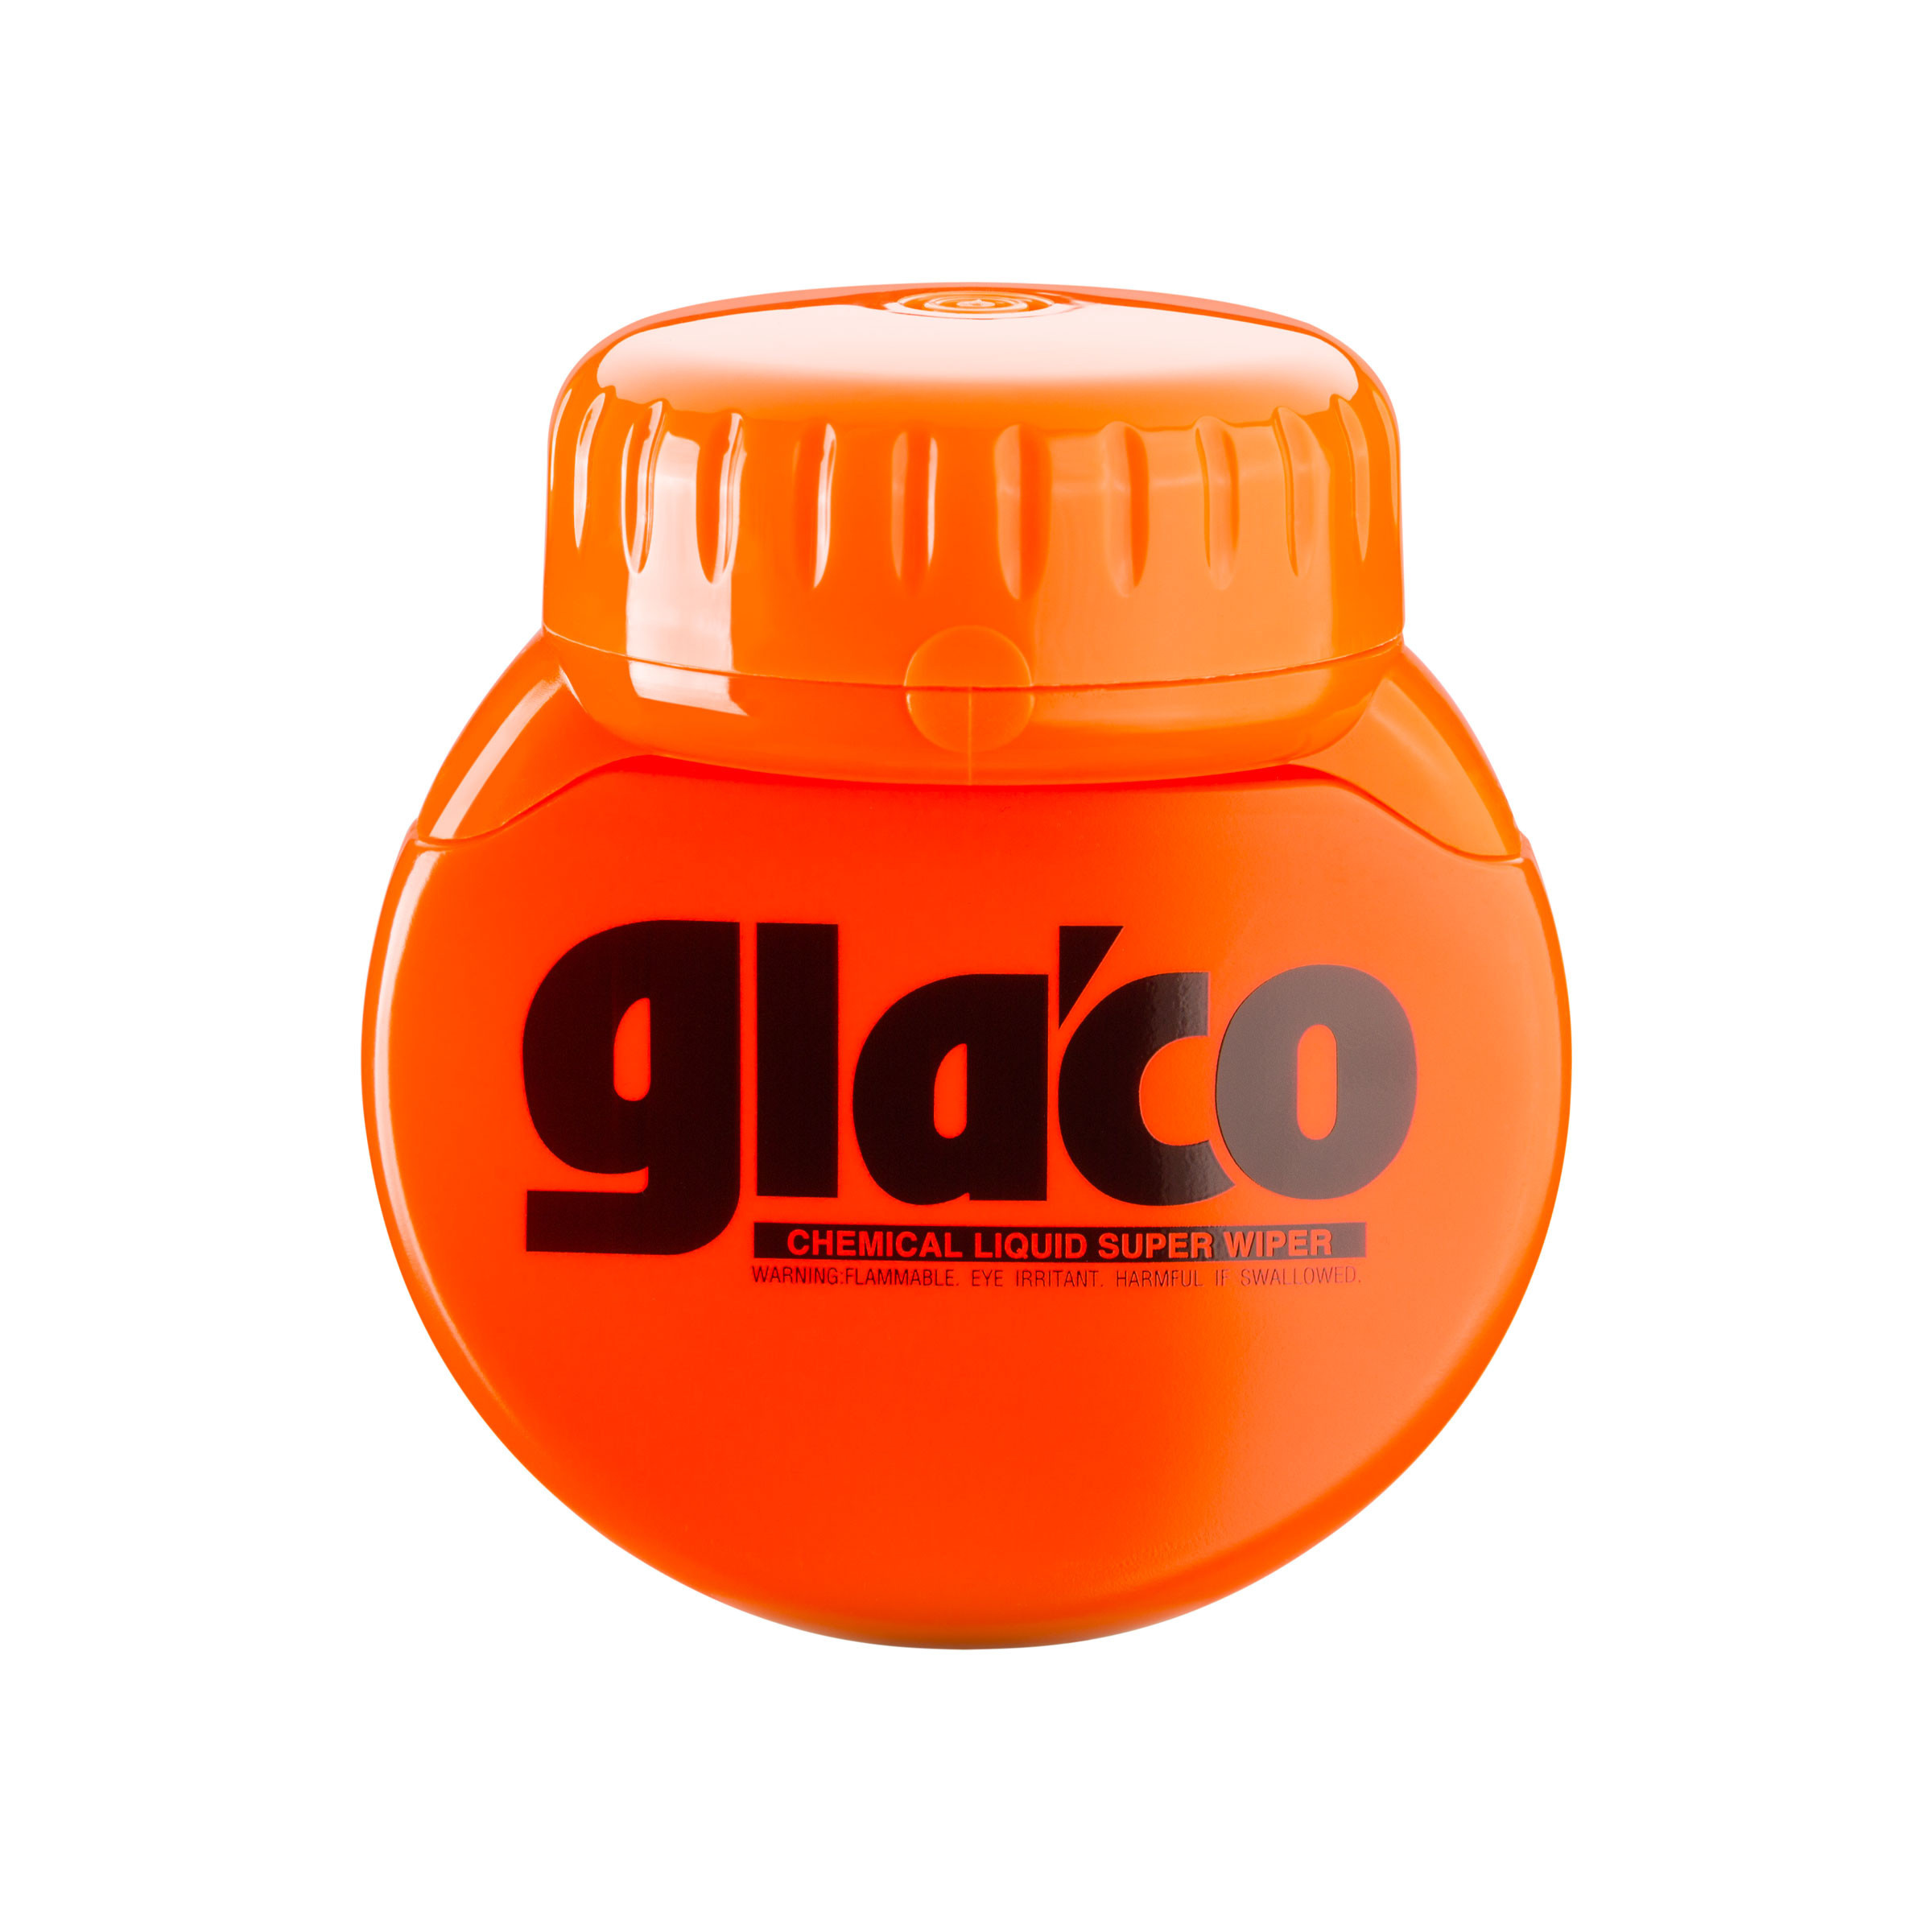 Glaco Roll On Large, unsichtbarer Scheibenwischer, 120 ml - Soft99